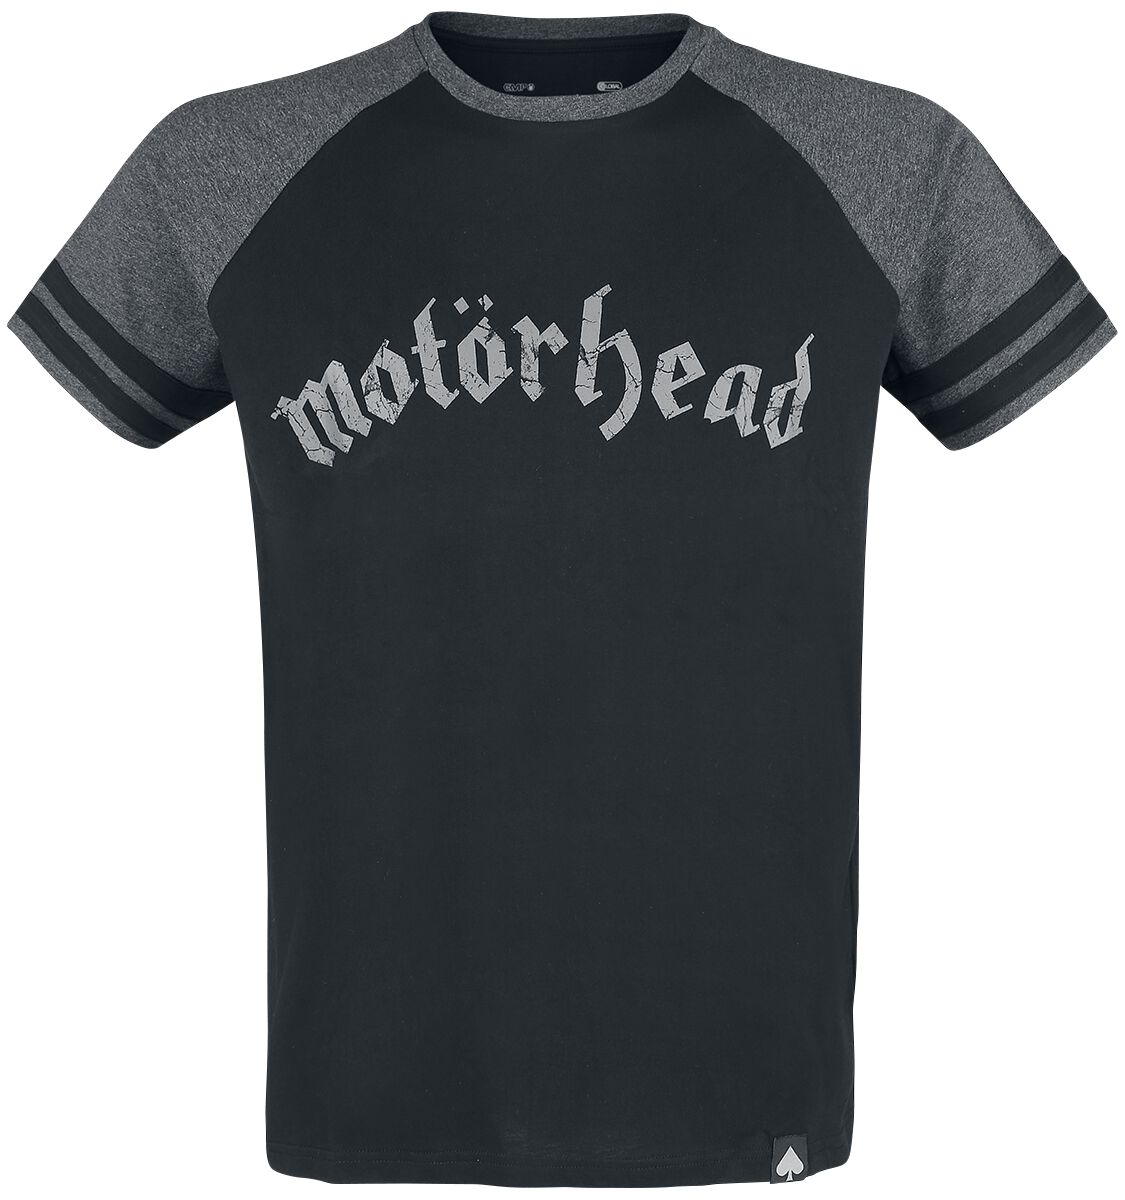 Motörhead T-Shirt - EMP Signature Collection - S bis 5XL - für Männer - Größe 3XL - schwarz/grau meliert  - EMP exklusives Merchandise!